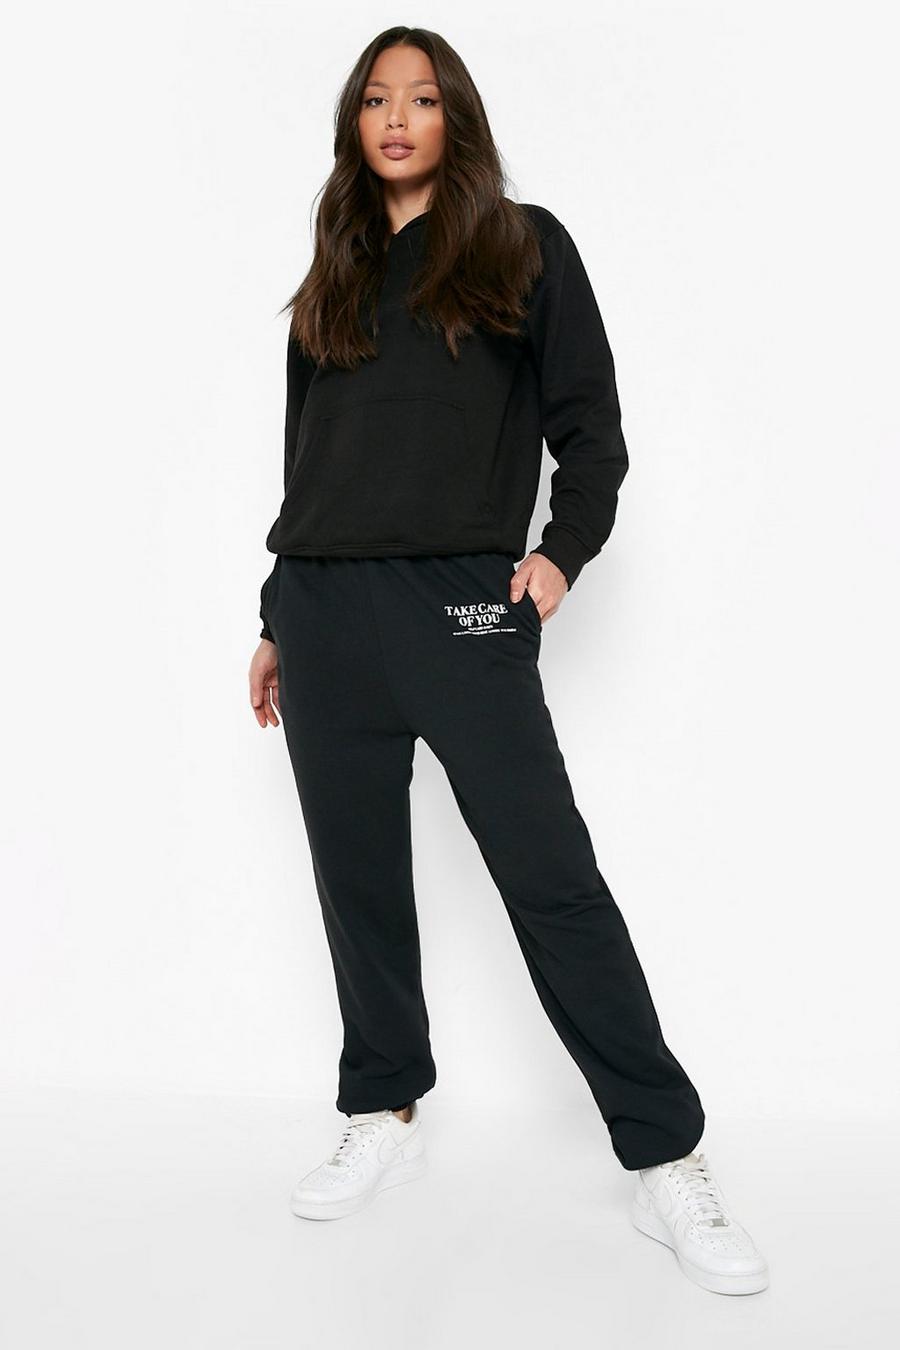 שחור black מכנסי ריצה מבד ממוחזר עם הדפס לנשים גבוהות